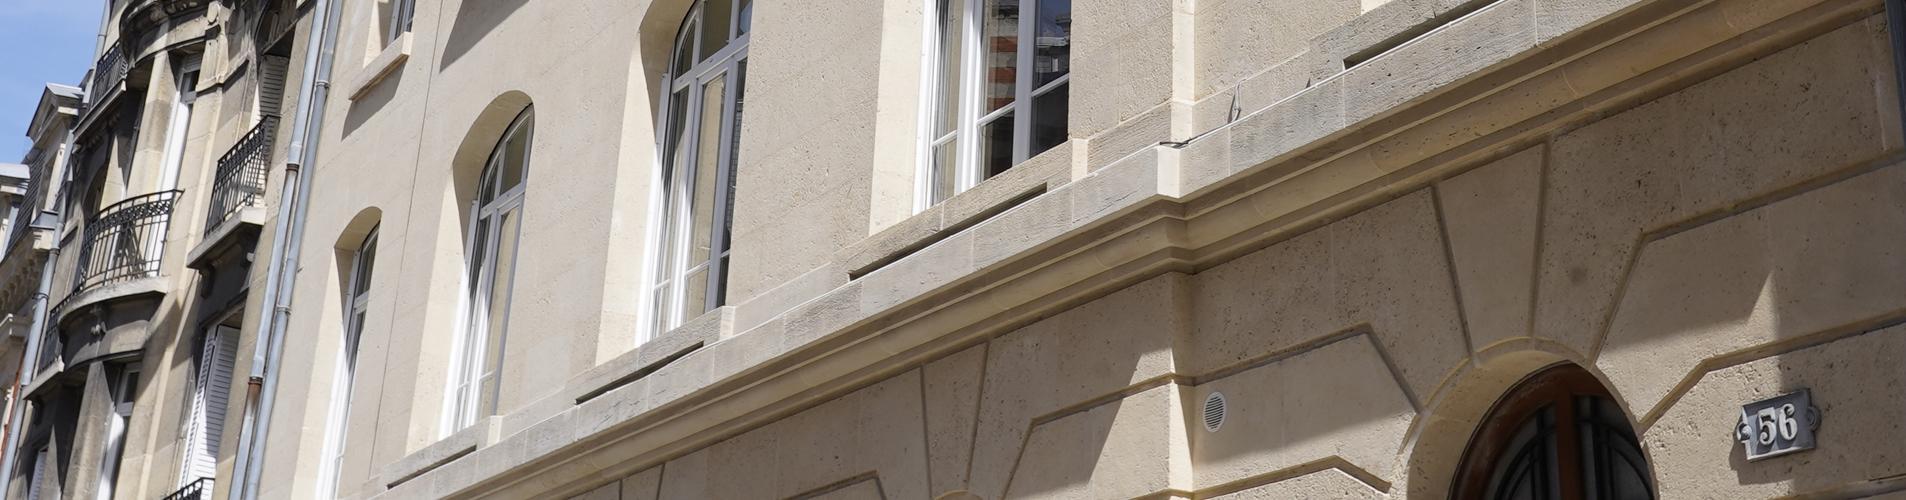   Talleyrand facade reims